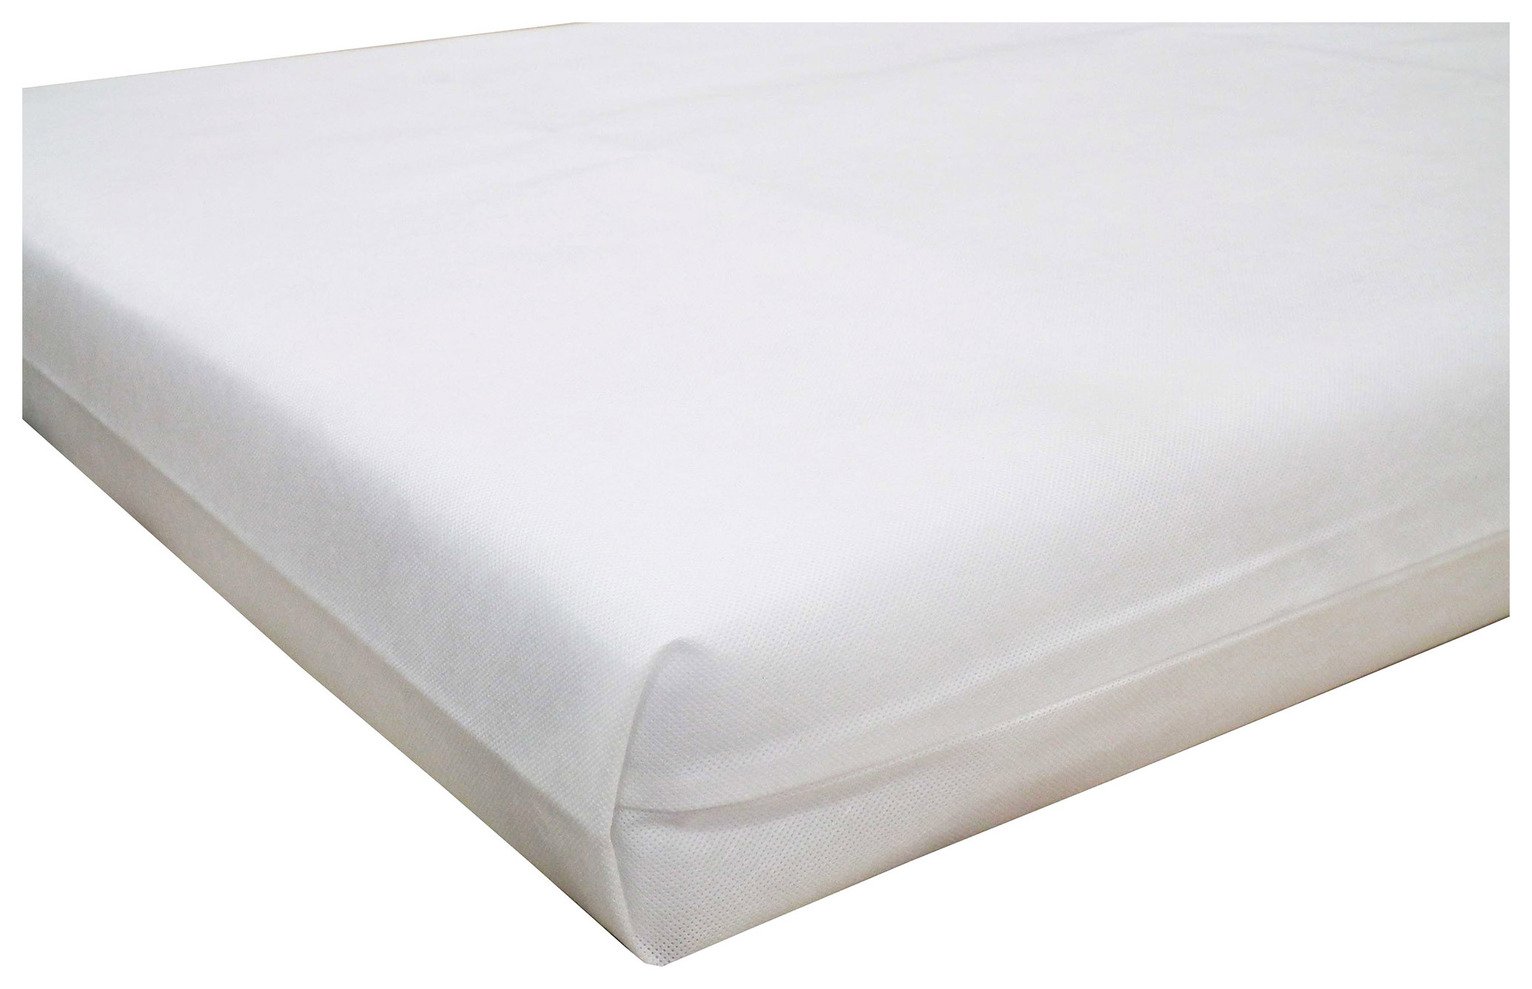 foam cot mattress reviews